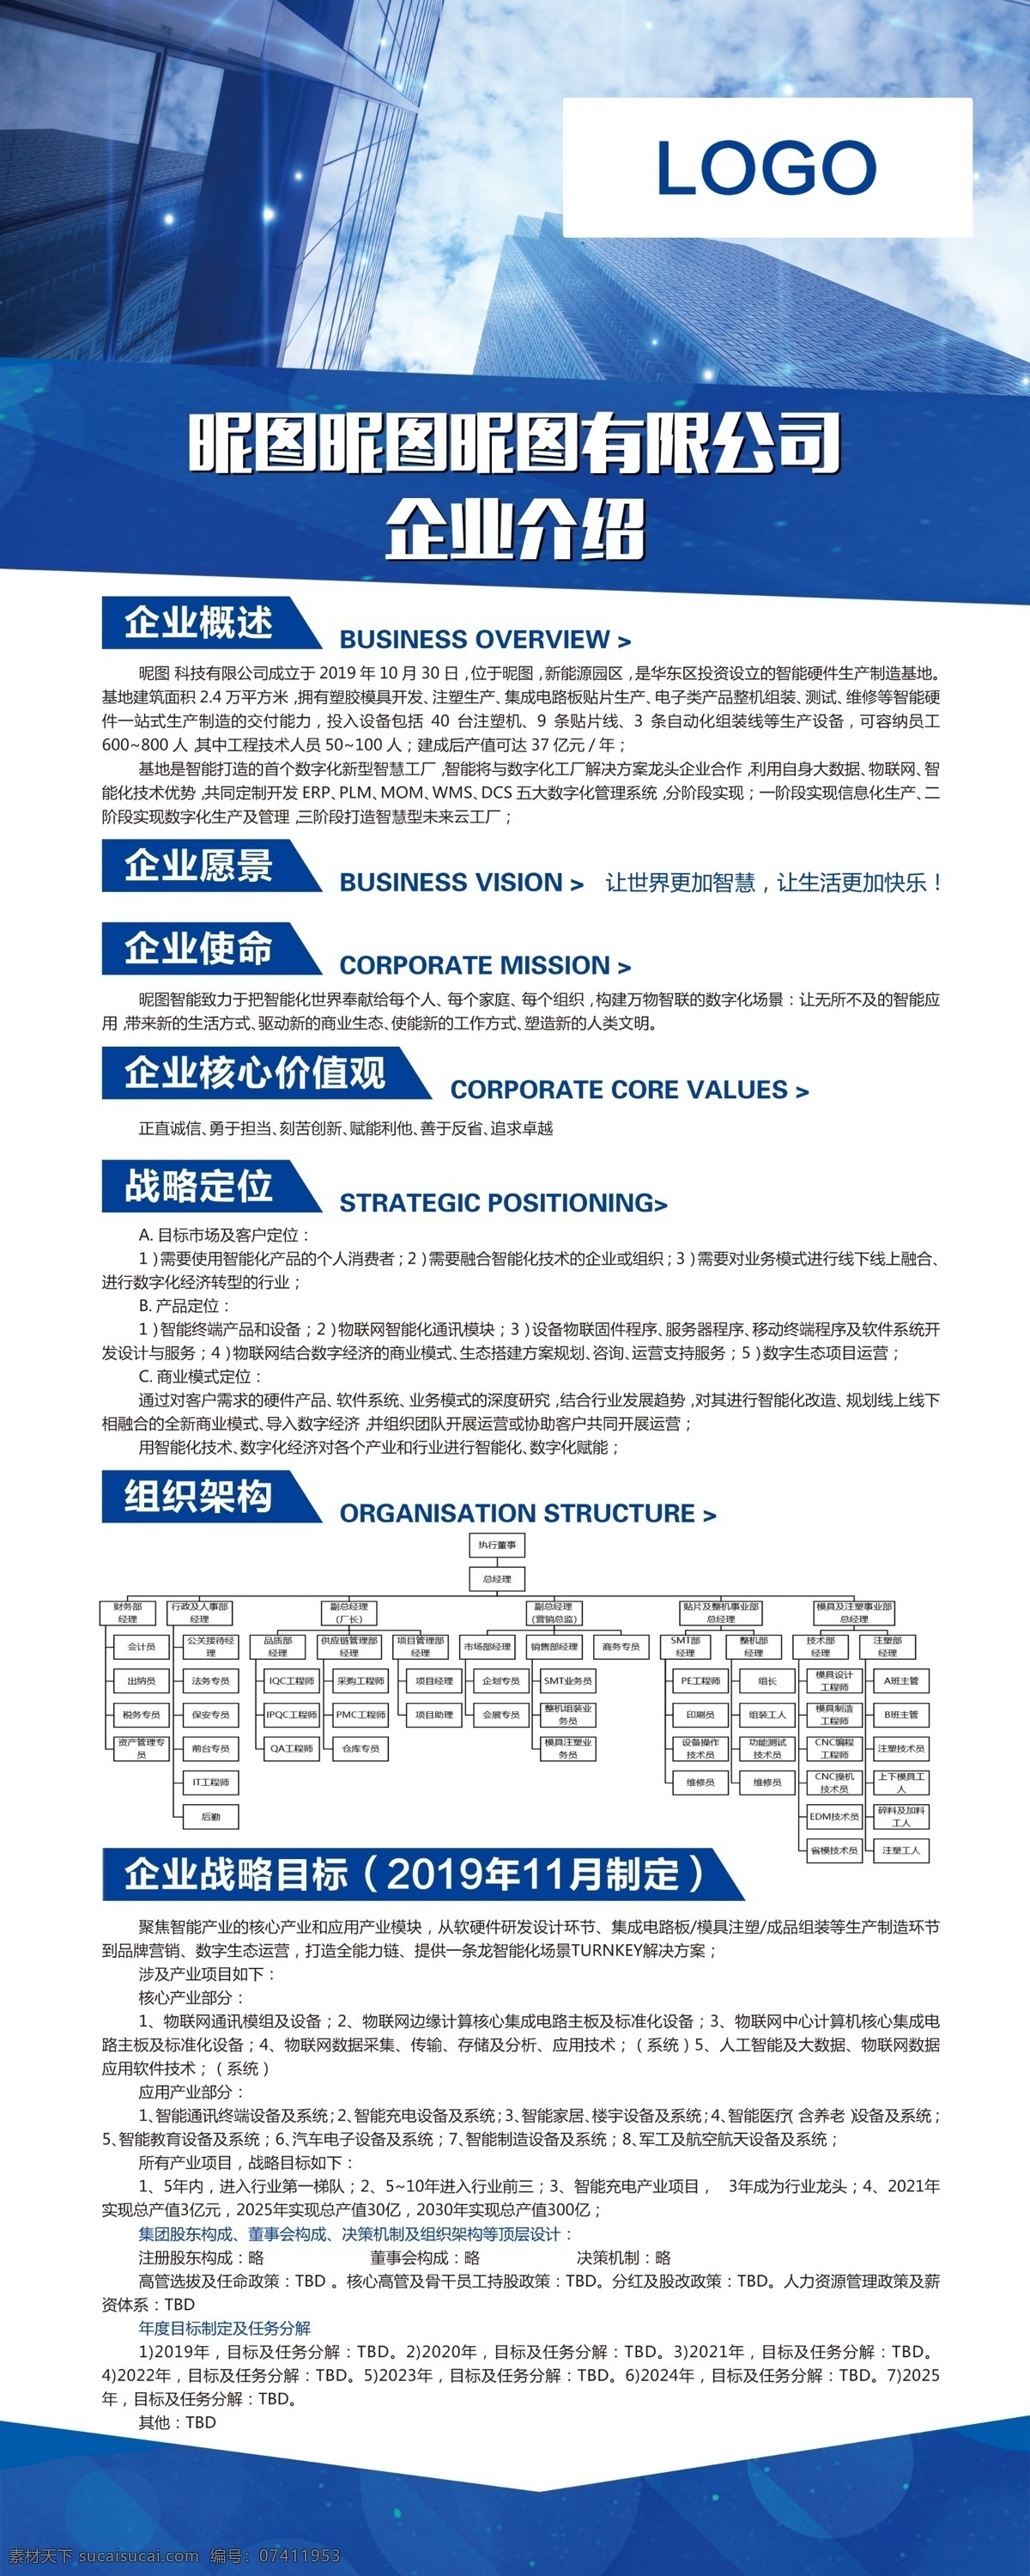 企业 介绍 展架 企业公司介绍 蓝色 大气 楼宇 展板模板